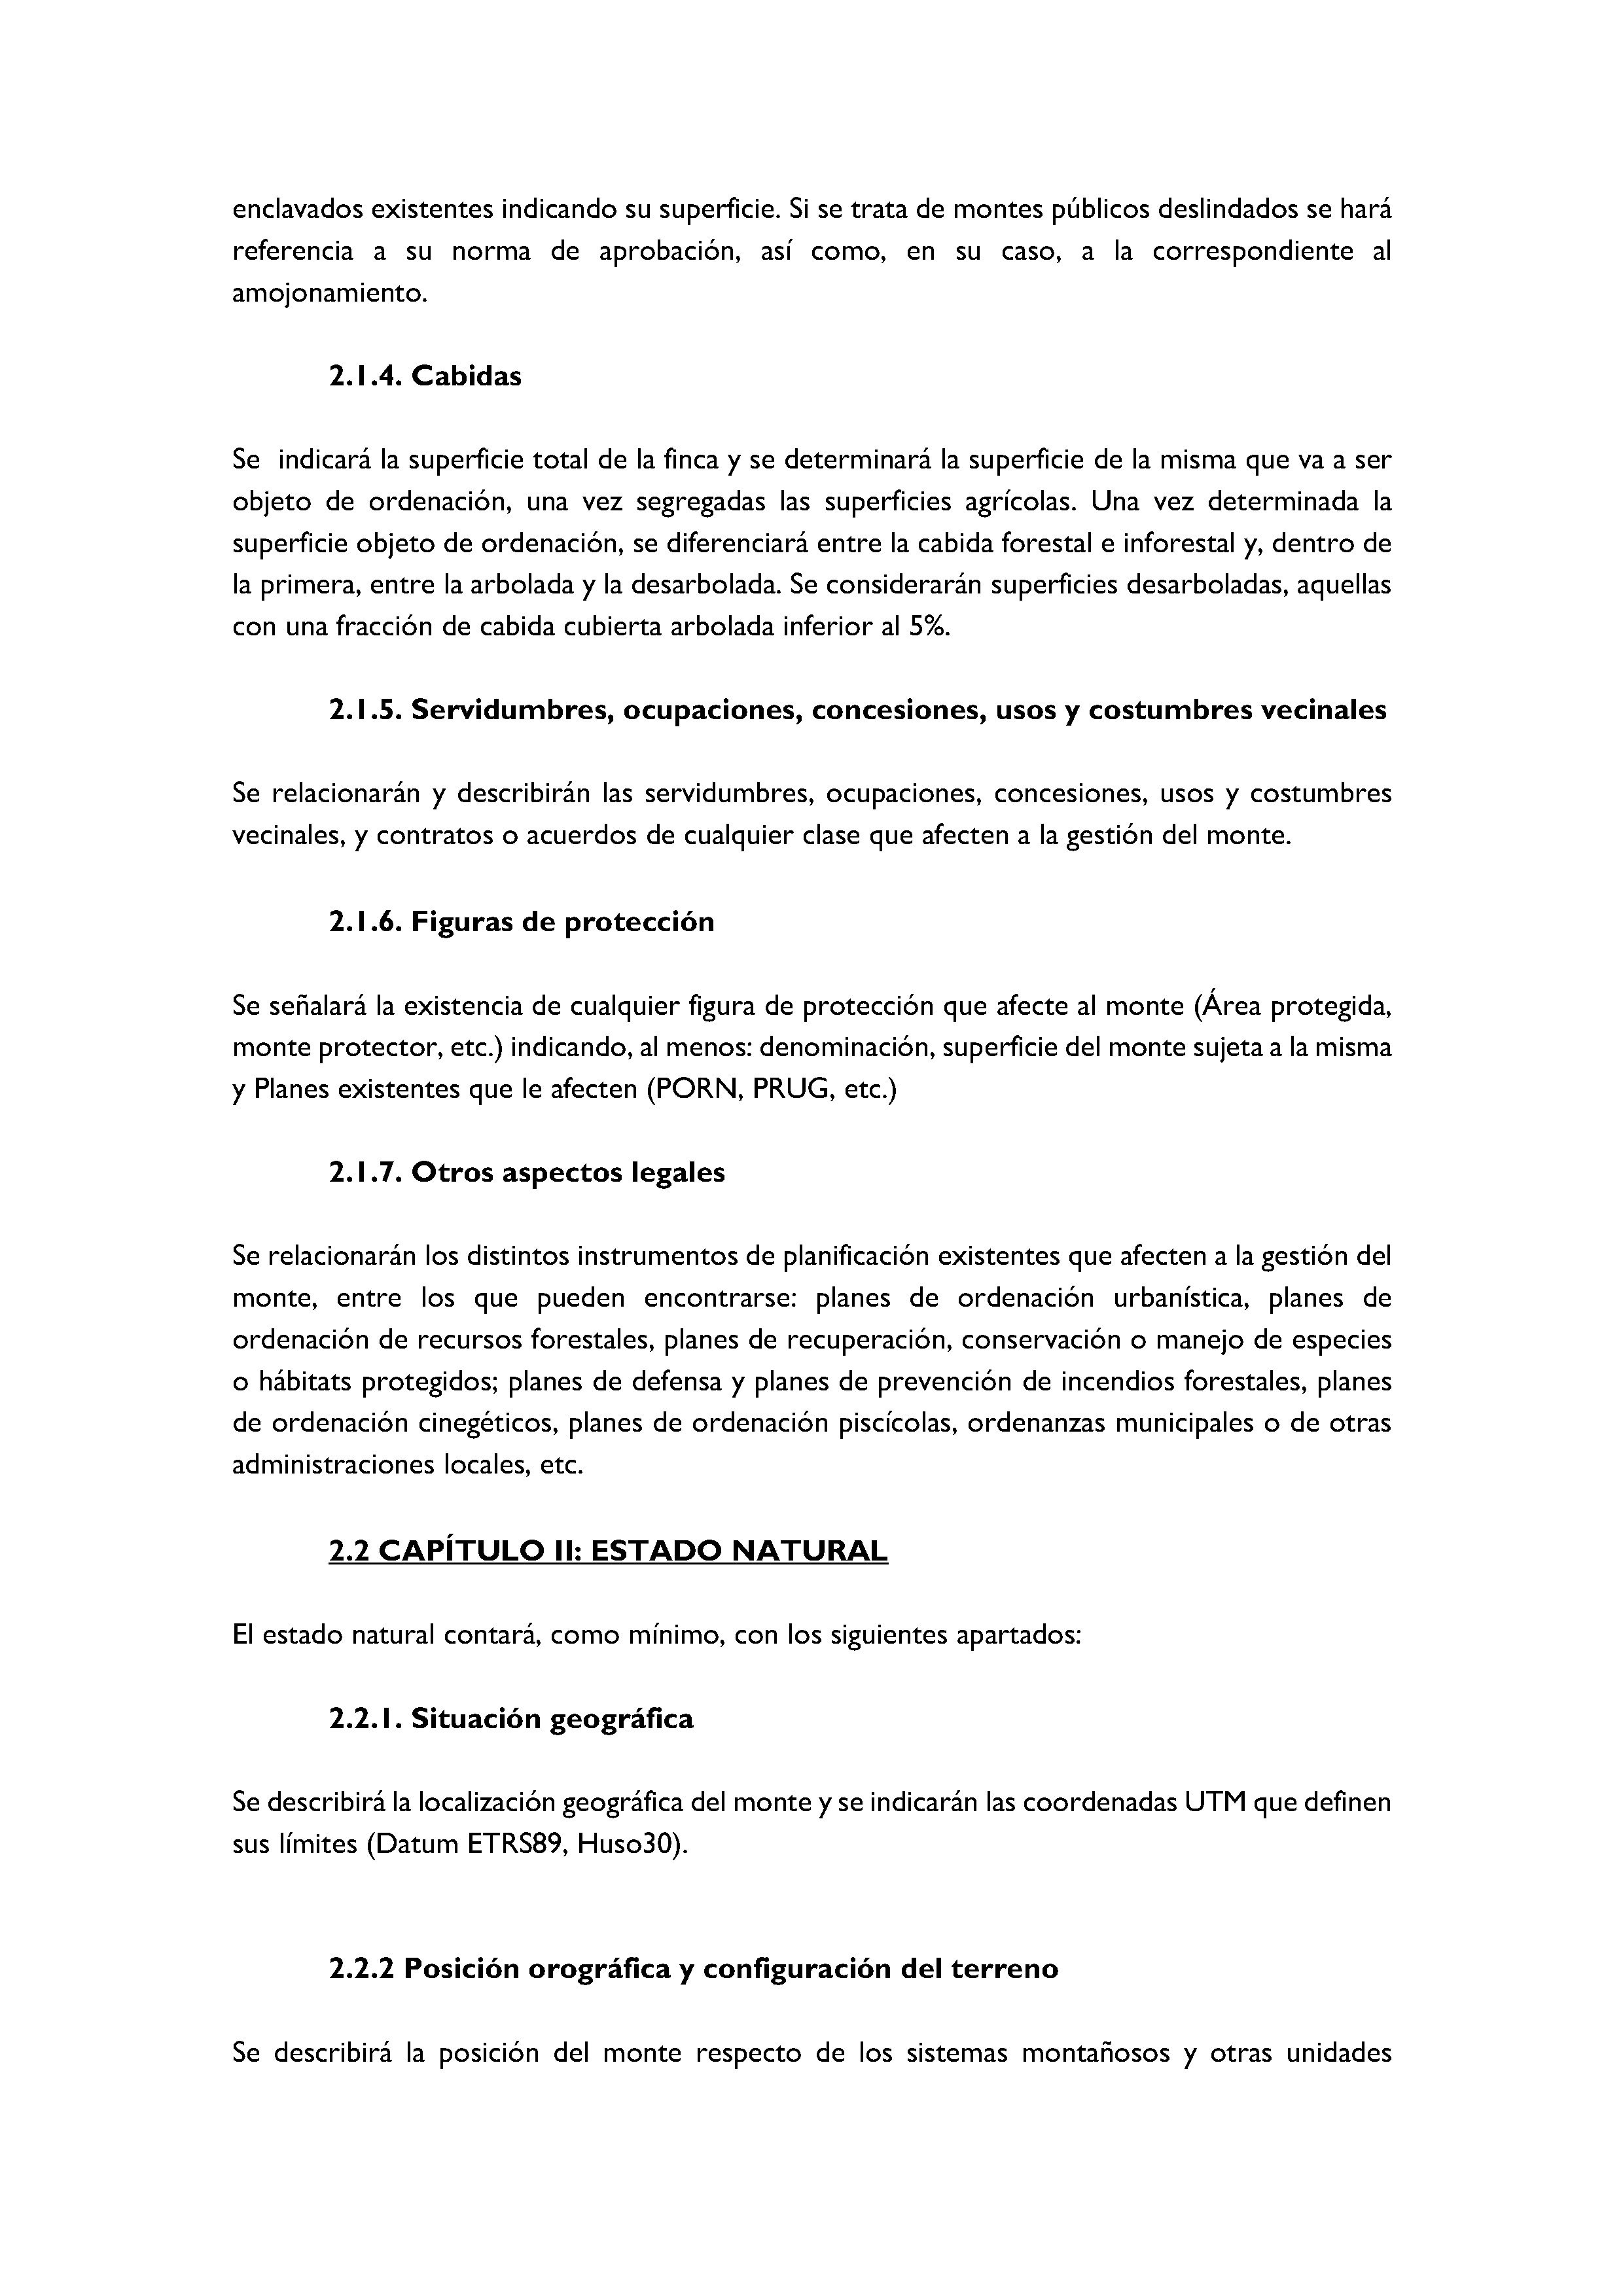 ANEXO - INSTRUCCIONES DE ORDENACIÓN DE LOS PROYECTOS DE ORDENACIÓN DE MONTES Pag 48